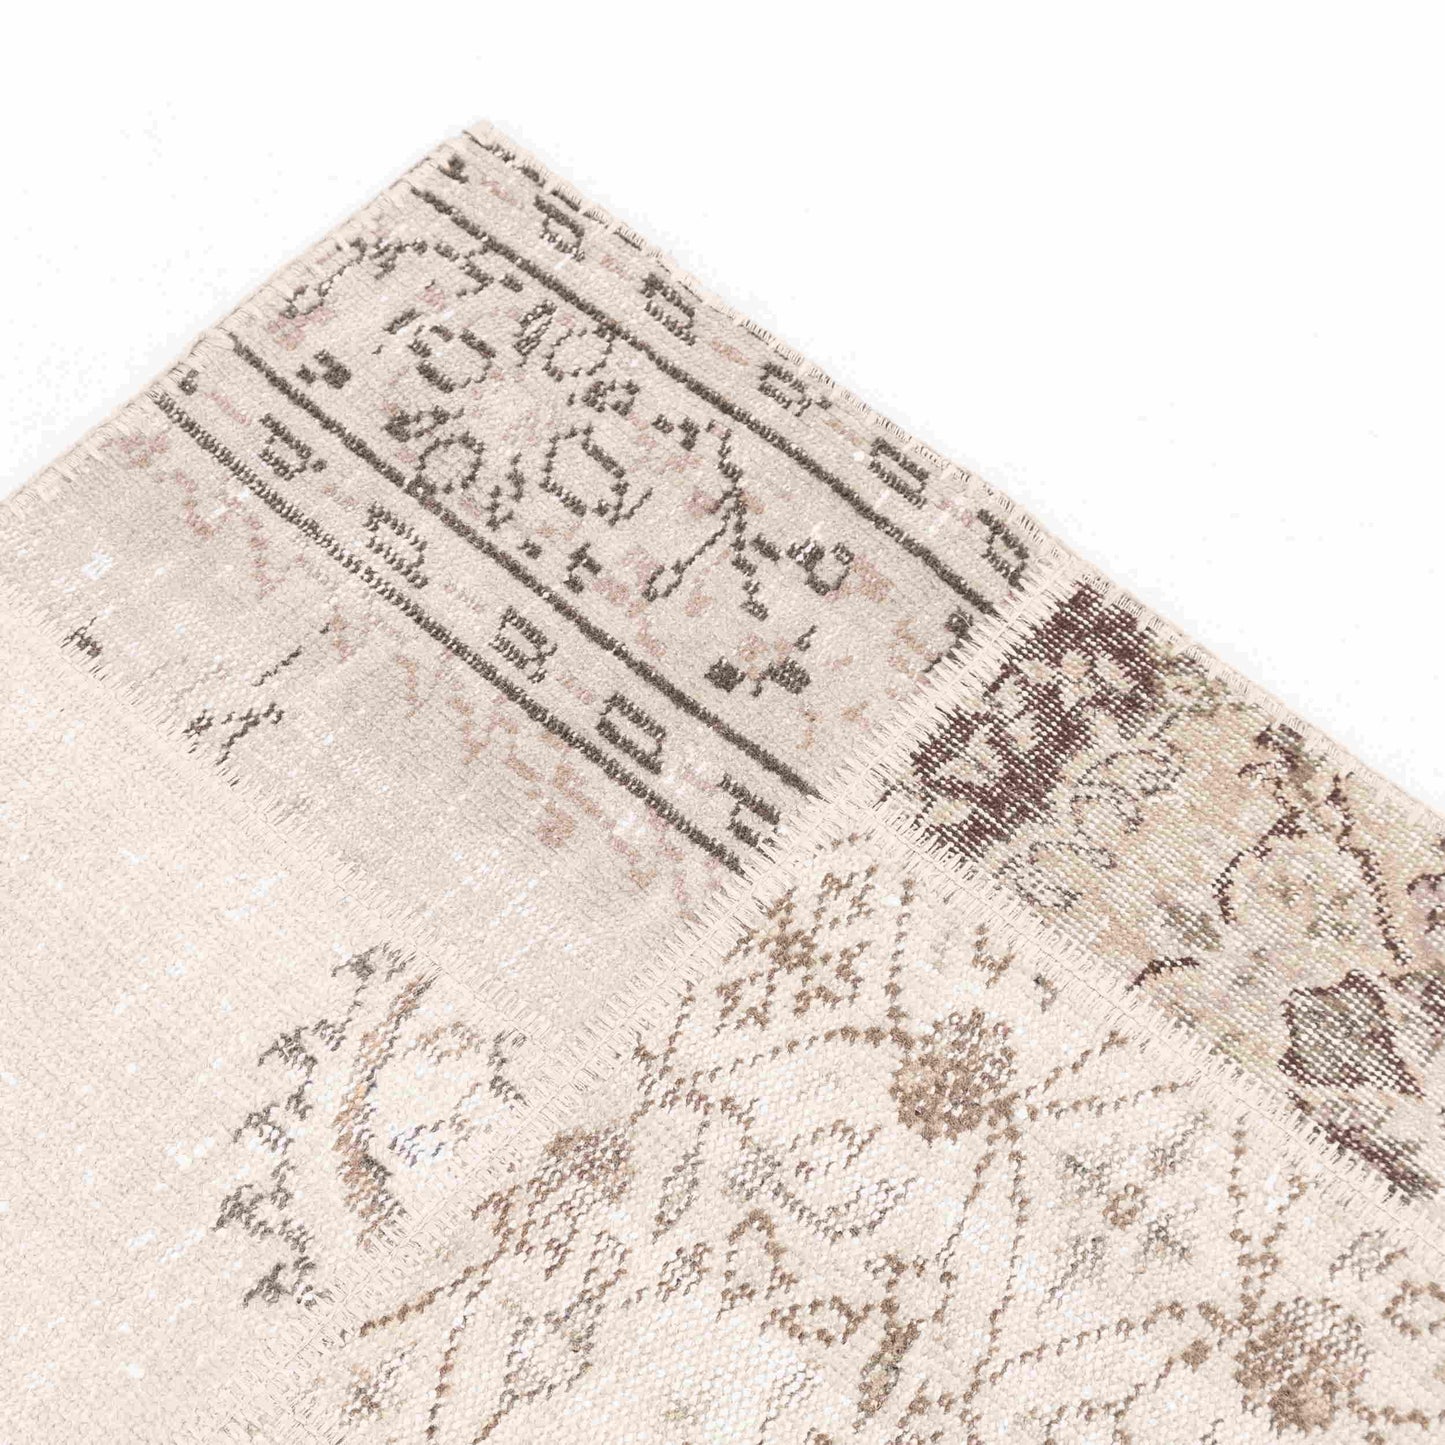 Oriental Turkish Runner Rug Handmade Wool On Wool Patchwork 80 x 198 Cm - 2' 8'' x 6' 6'' Sand C007